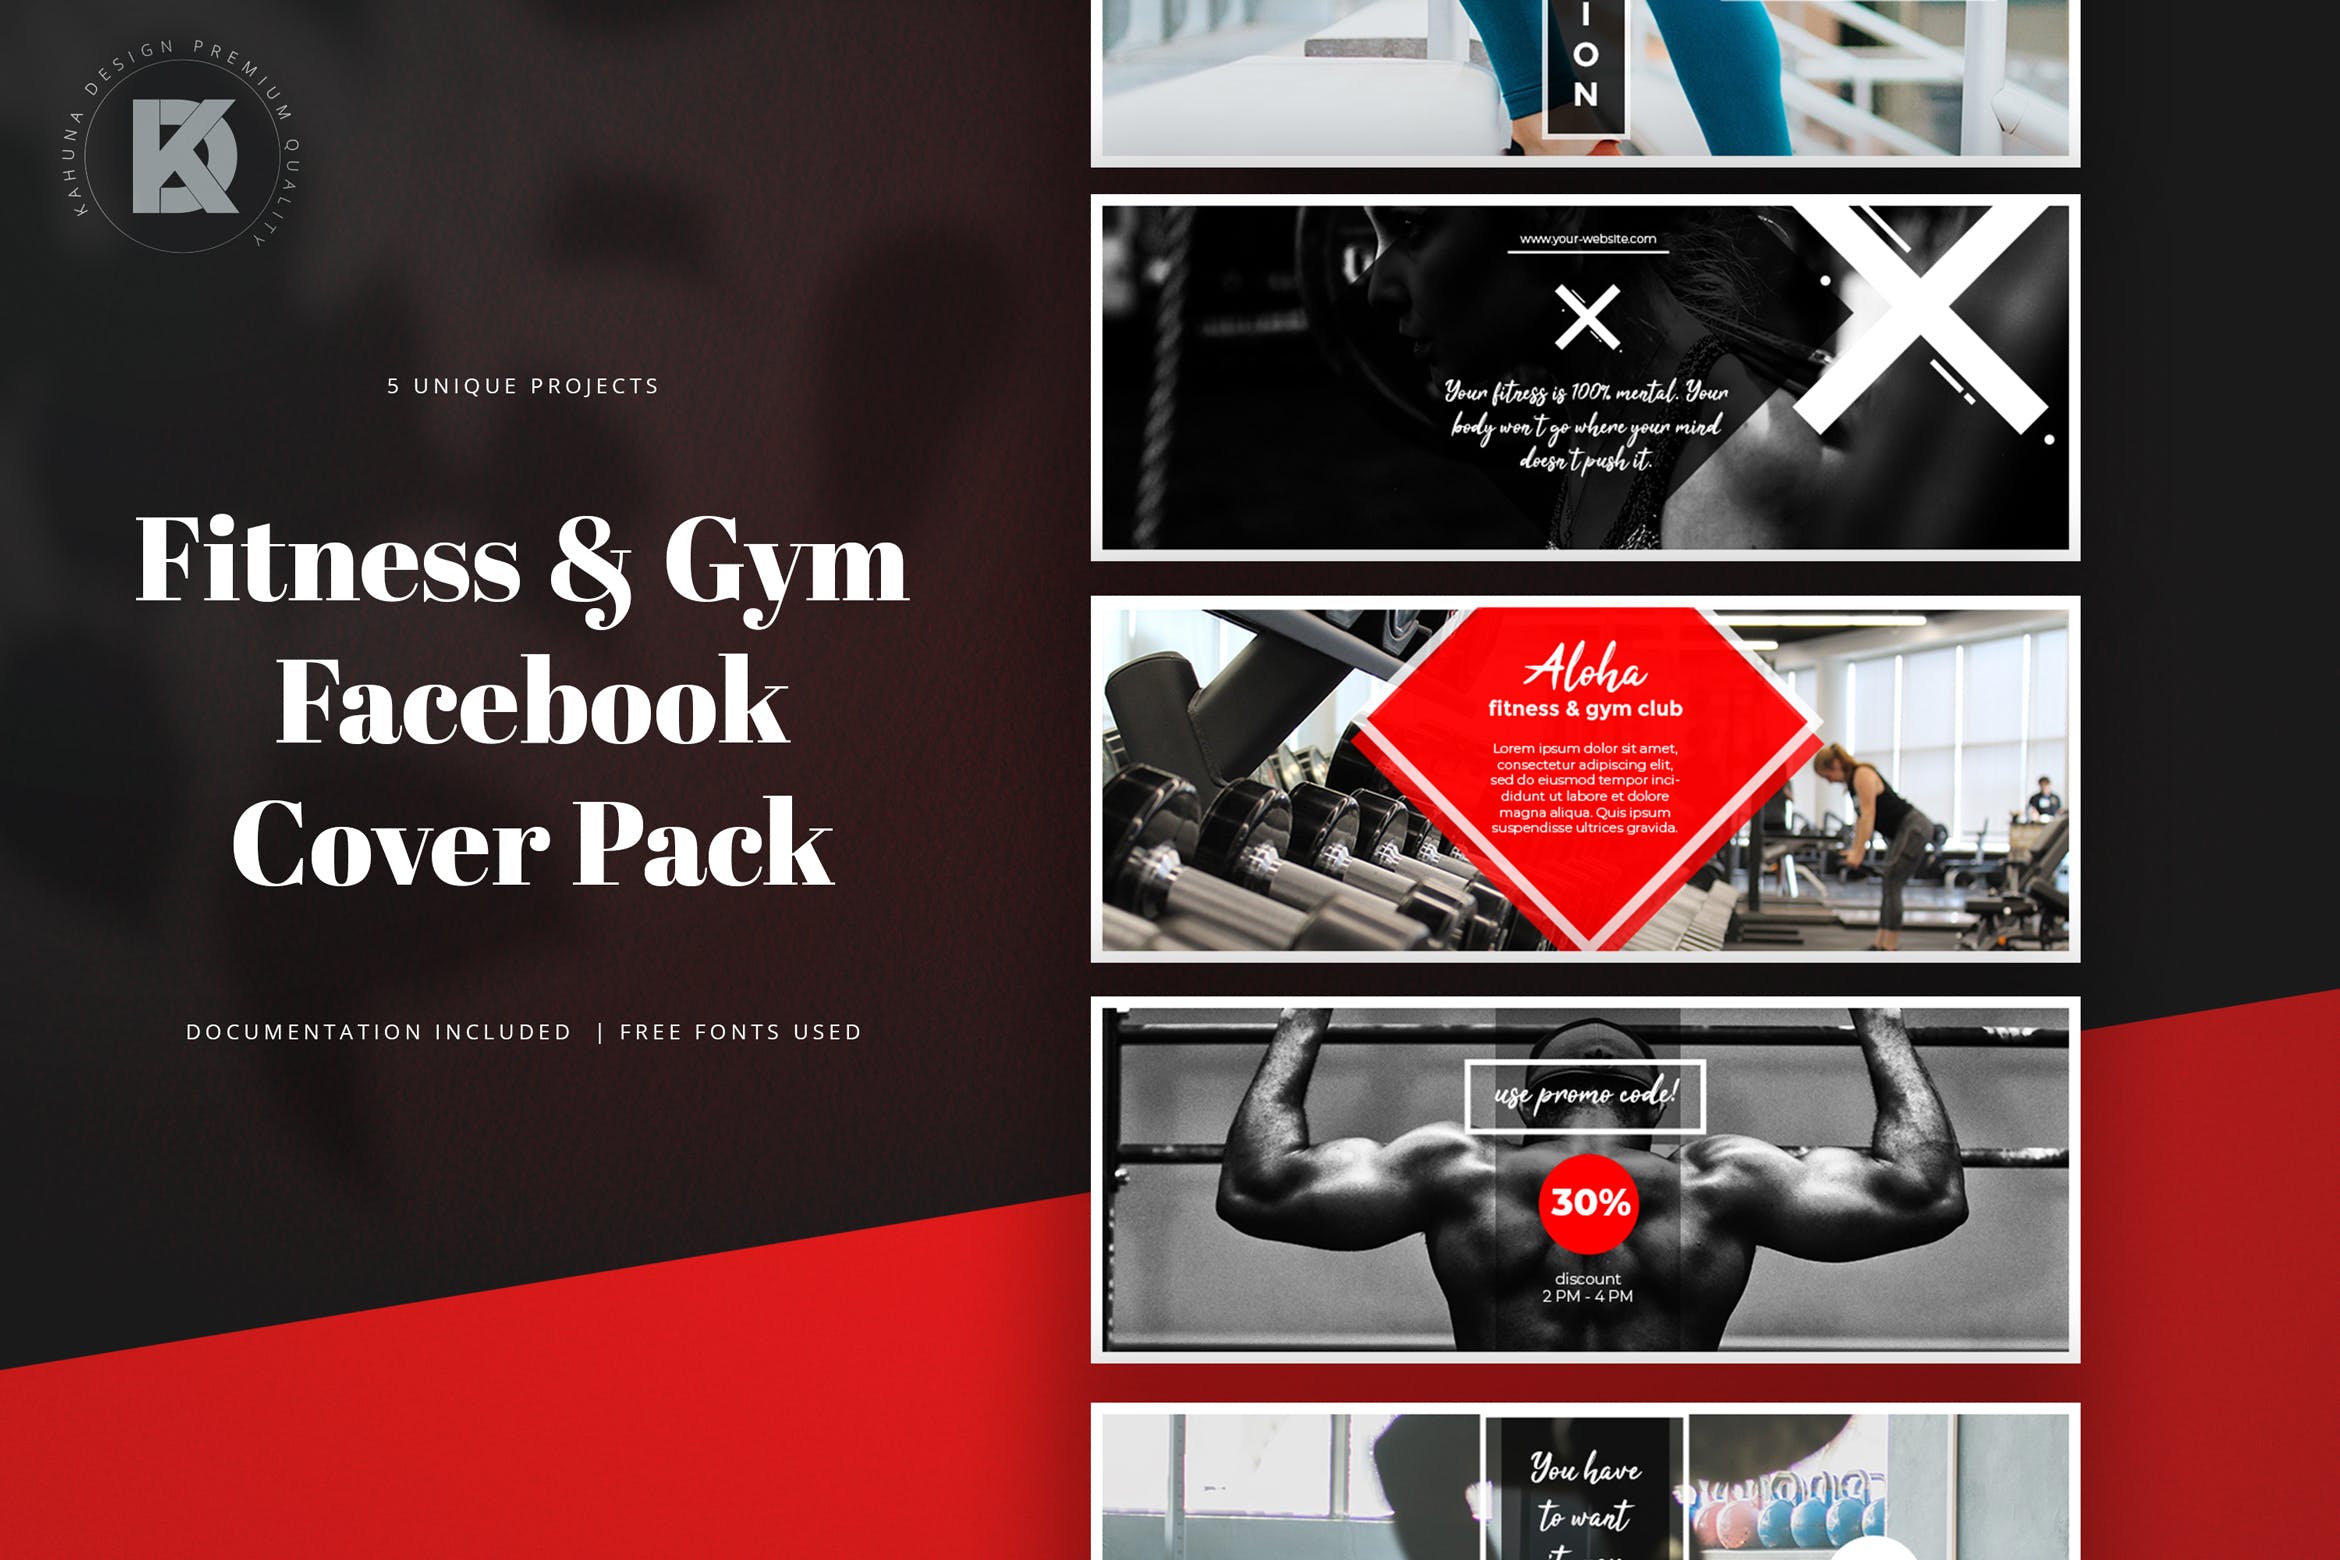 健身运动品牌Facebook封面设计模板非凡图库精选 Fitness & Gym Facebook Cover Pack插图